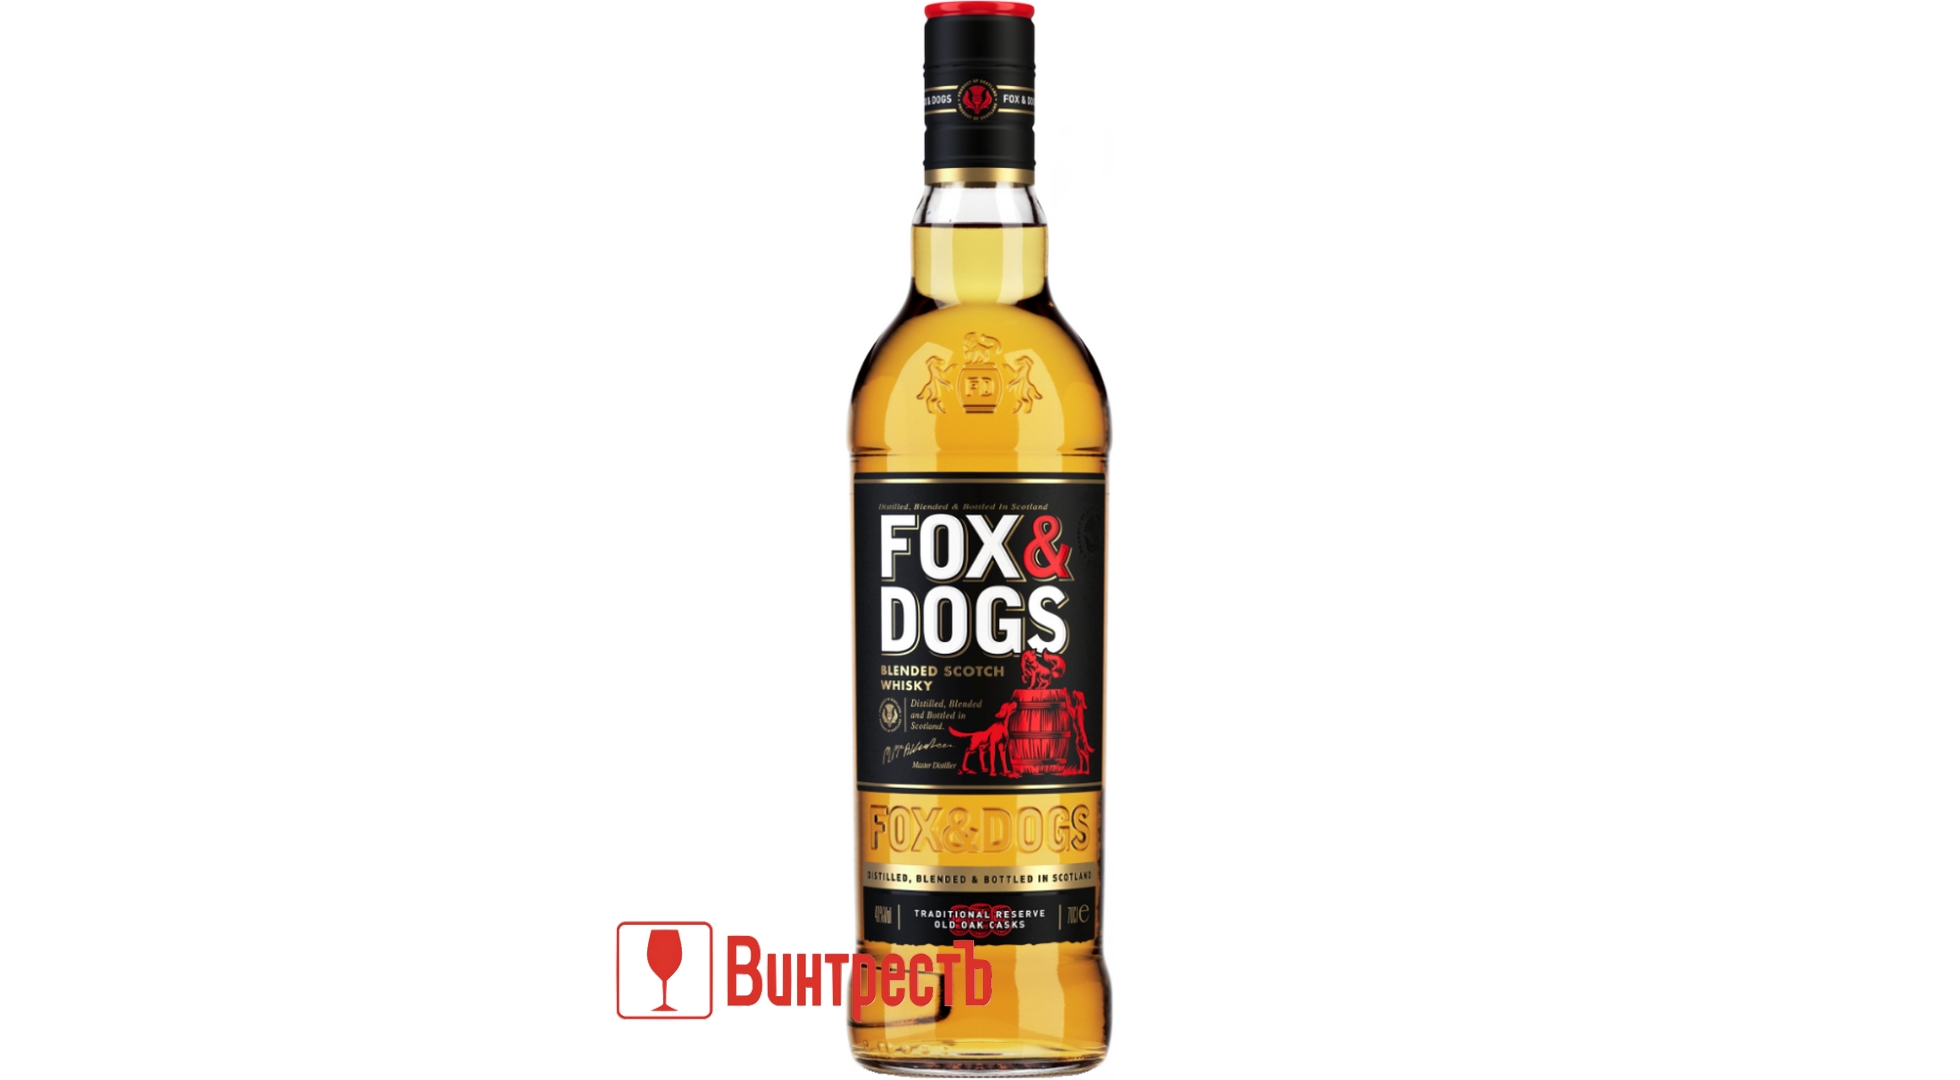 Fox and dogs отзывы. Виски Фокс энд догс 0.7 купажированный 40. Виски Фокс энд догс купаж 0.7. Виски Фокс энд догс 0.5. Фокс энд догс виски купажированный 0,5.